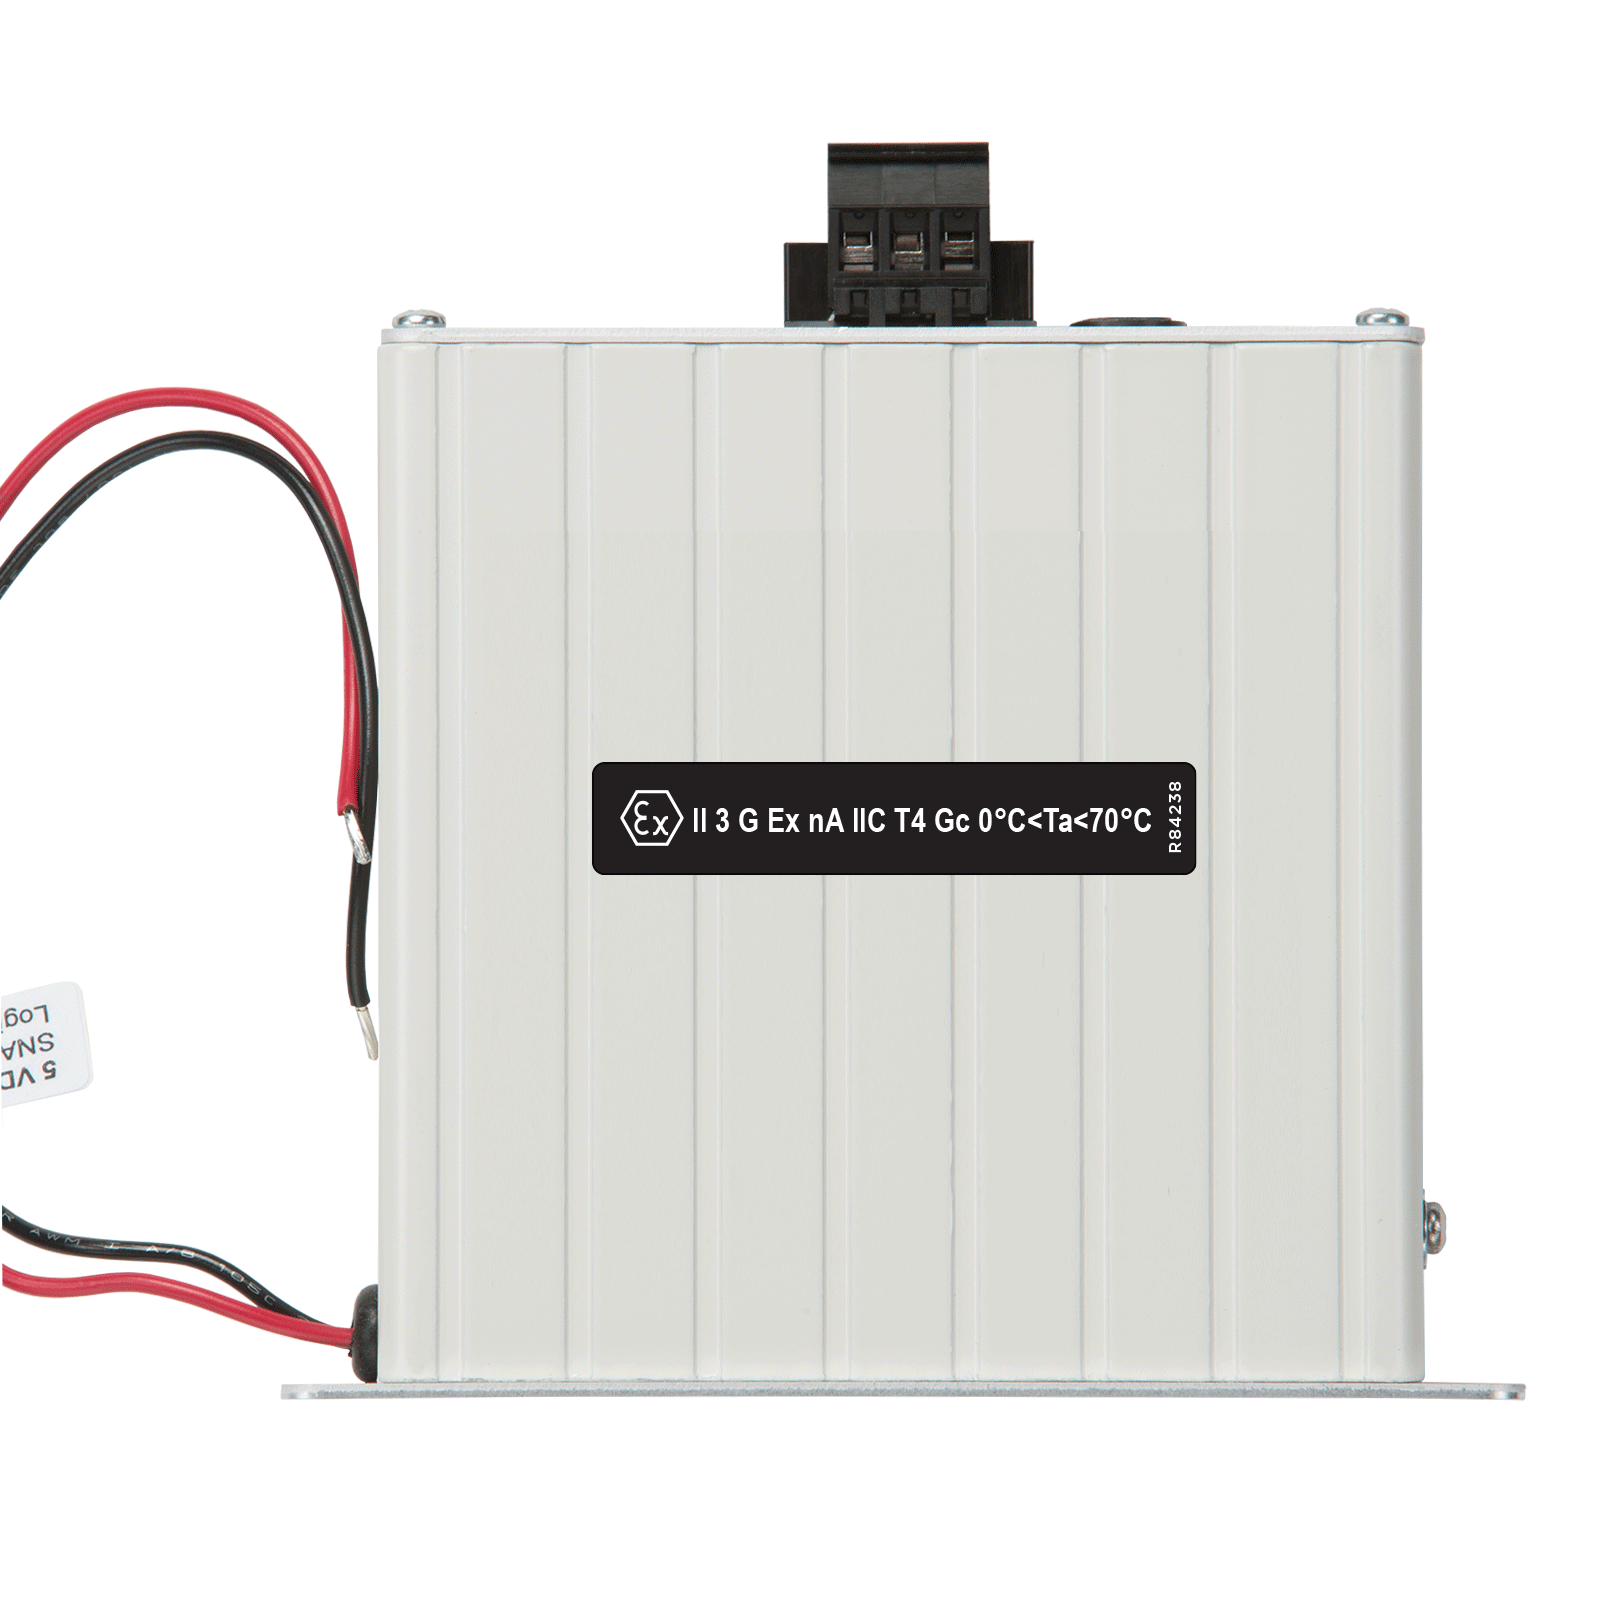 OPTO 22 - SNAP-PS24U SNAP Power Supply, 100-250 VAC to 24 VDC